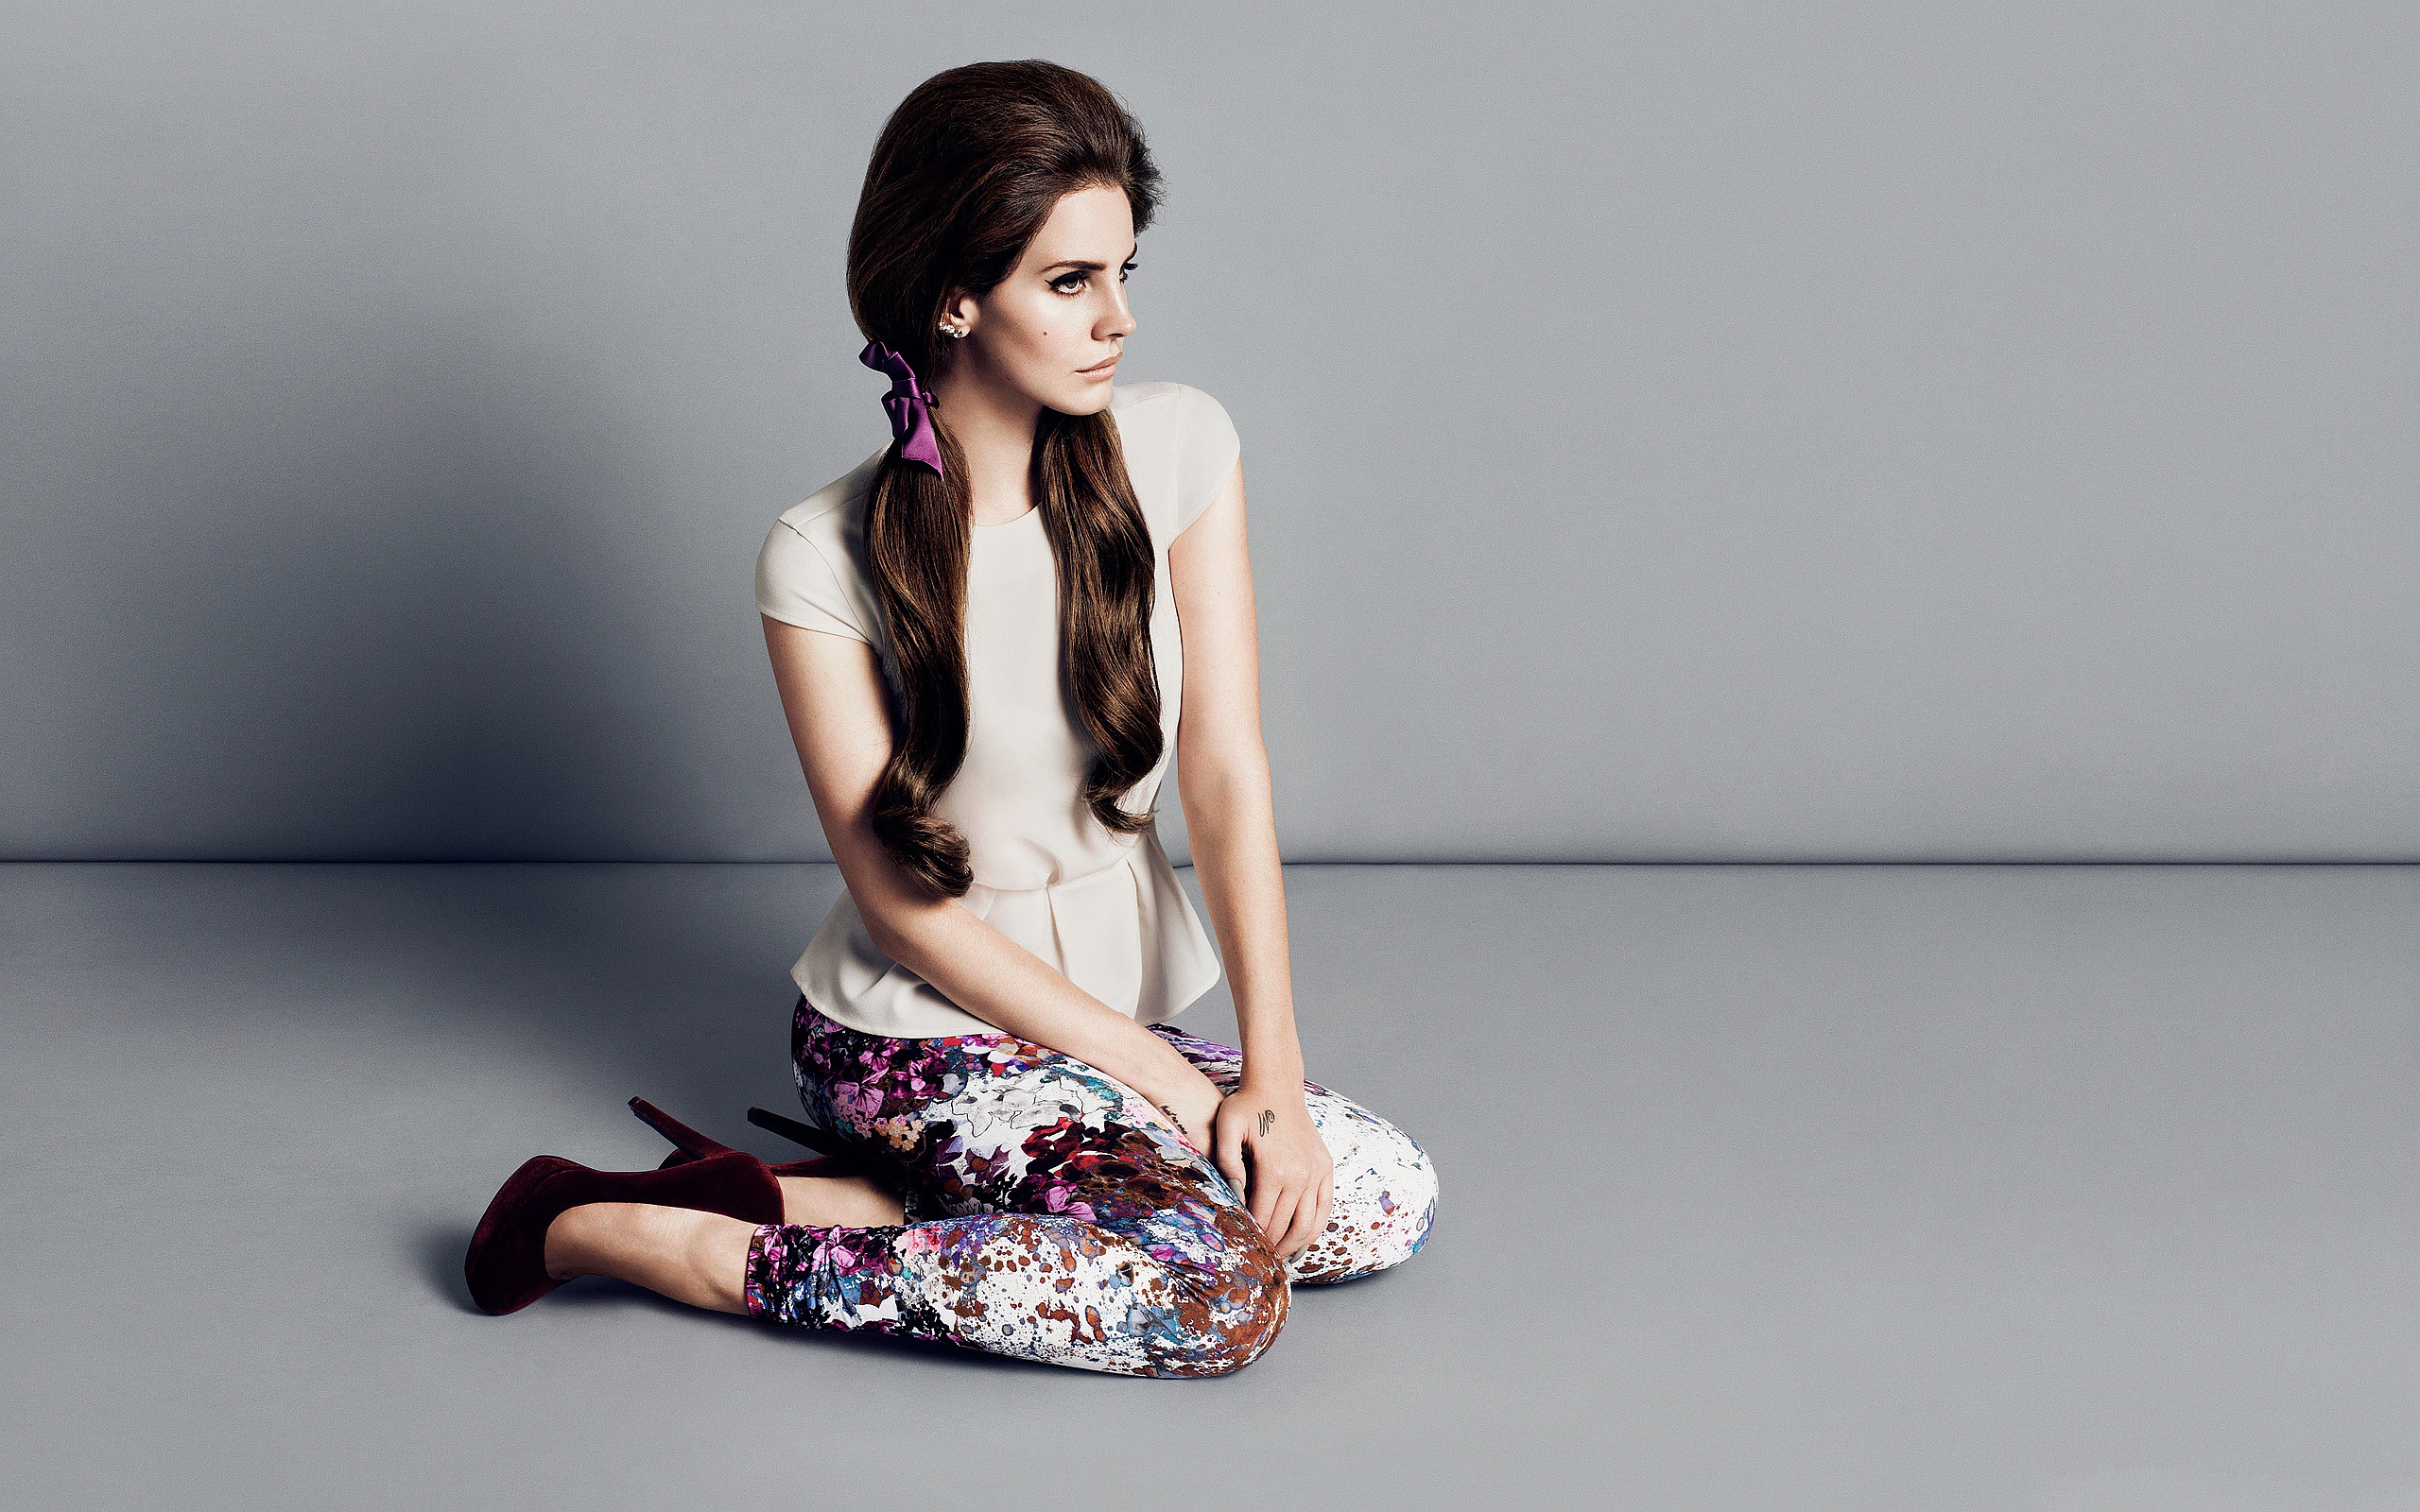 Lana Del Rey Sitting